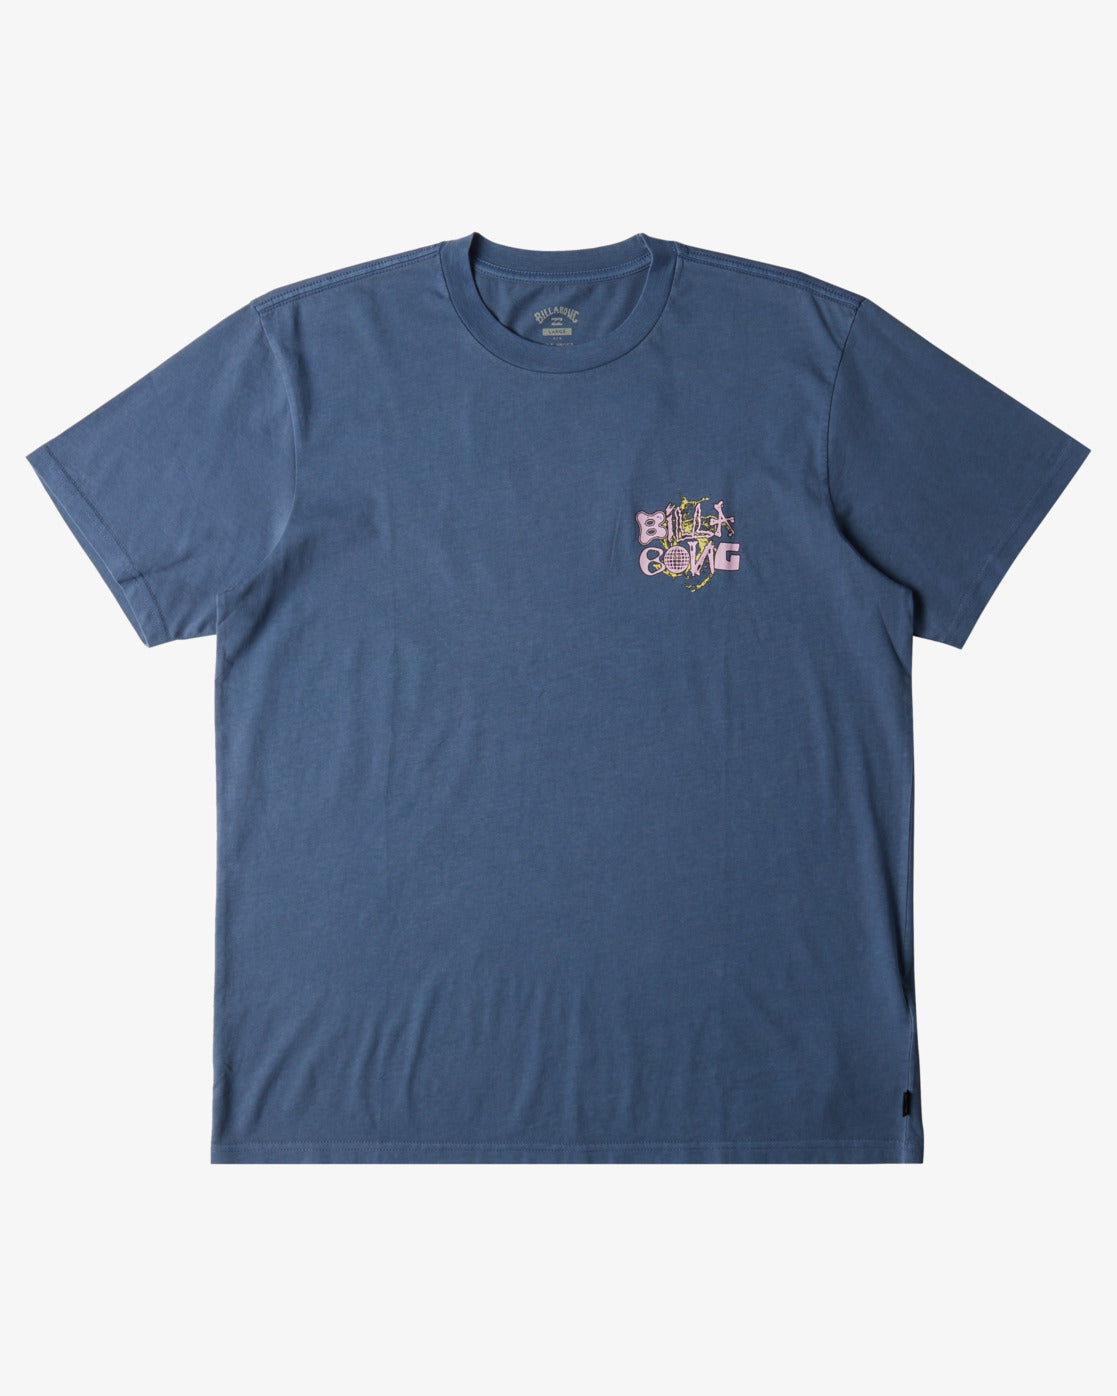 Billabong High Tide - T-Shirt - Slate Blue